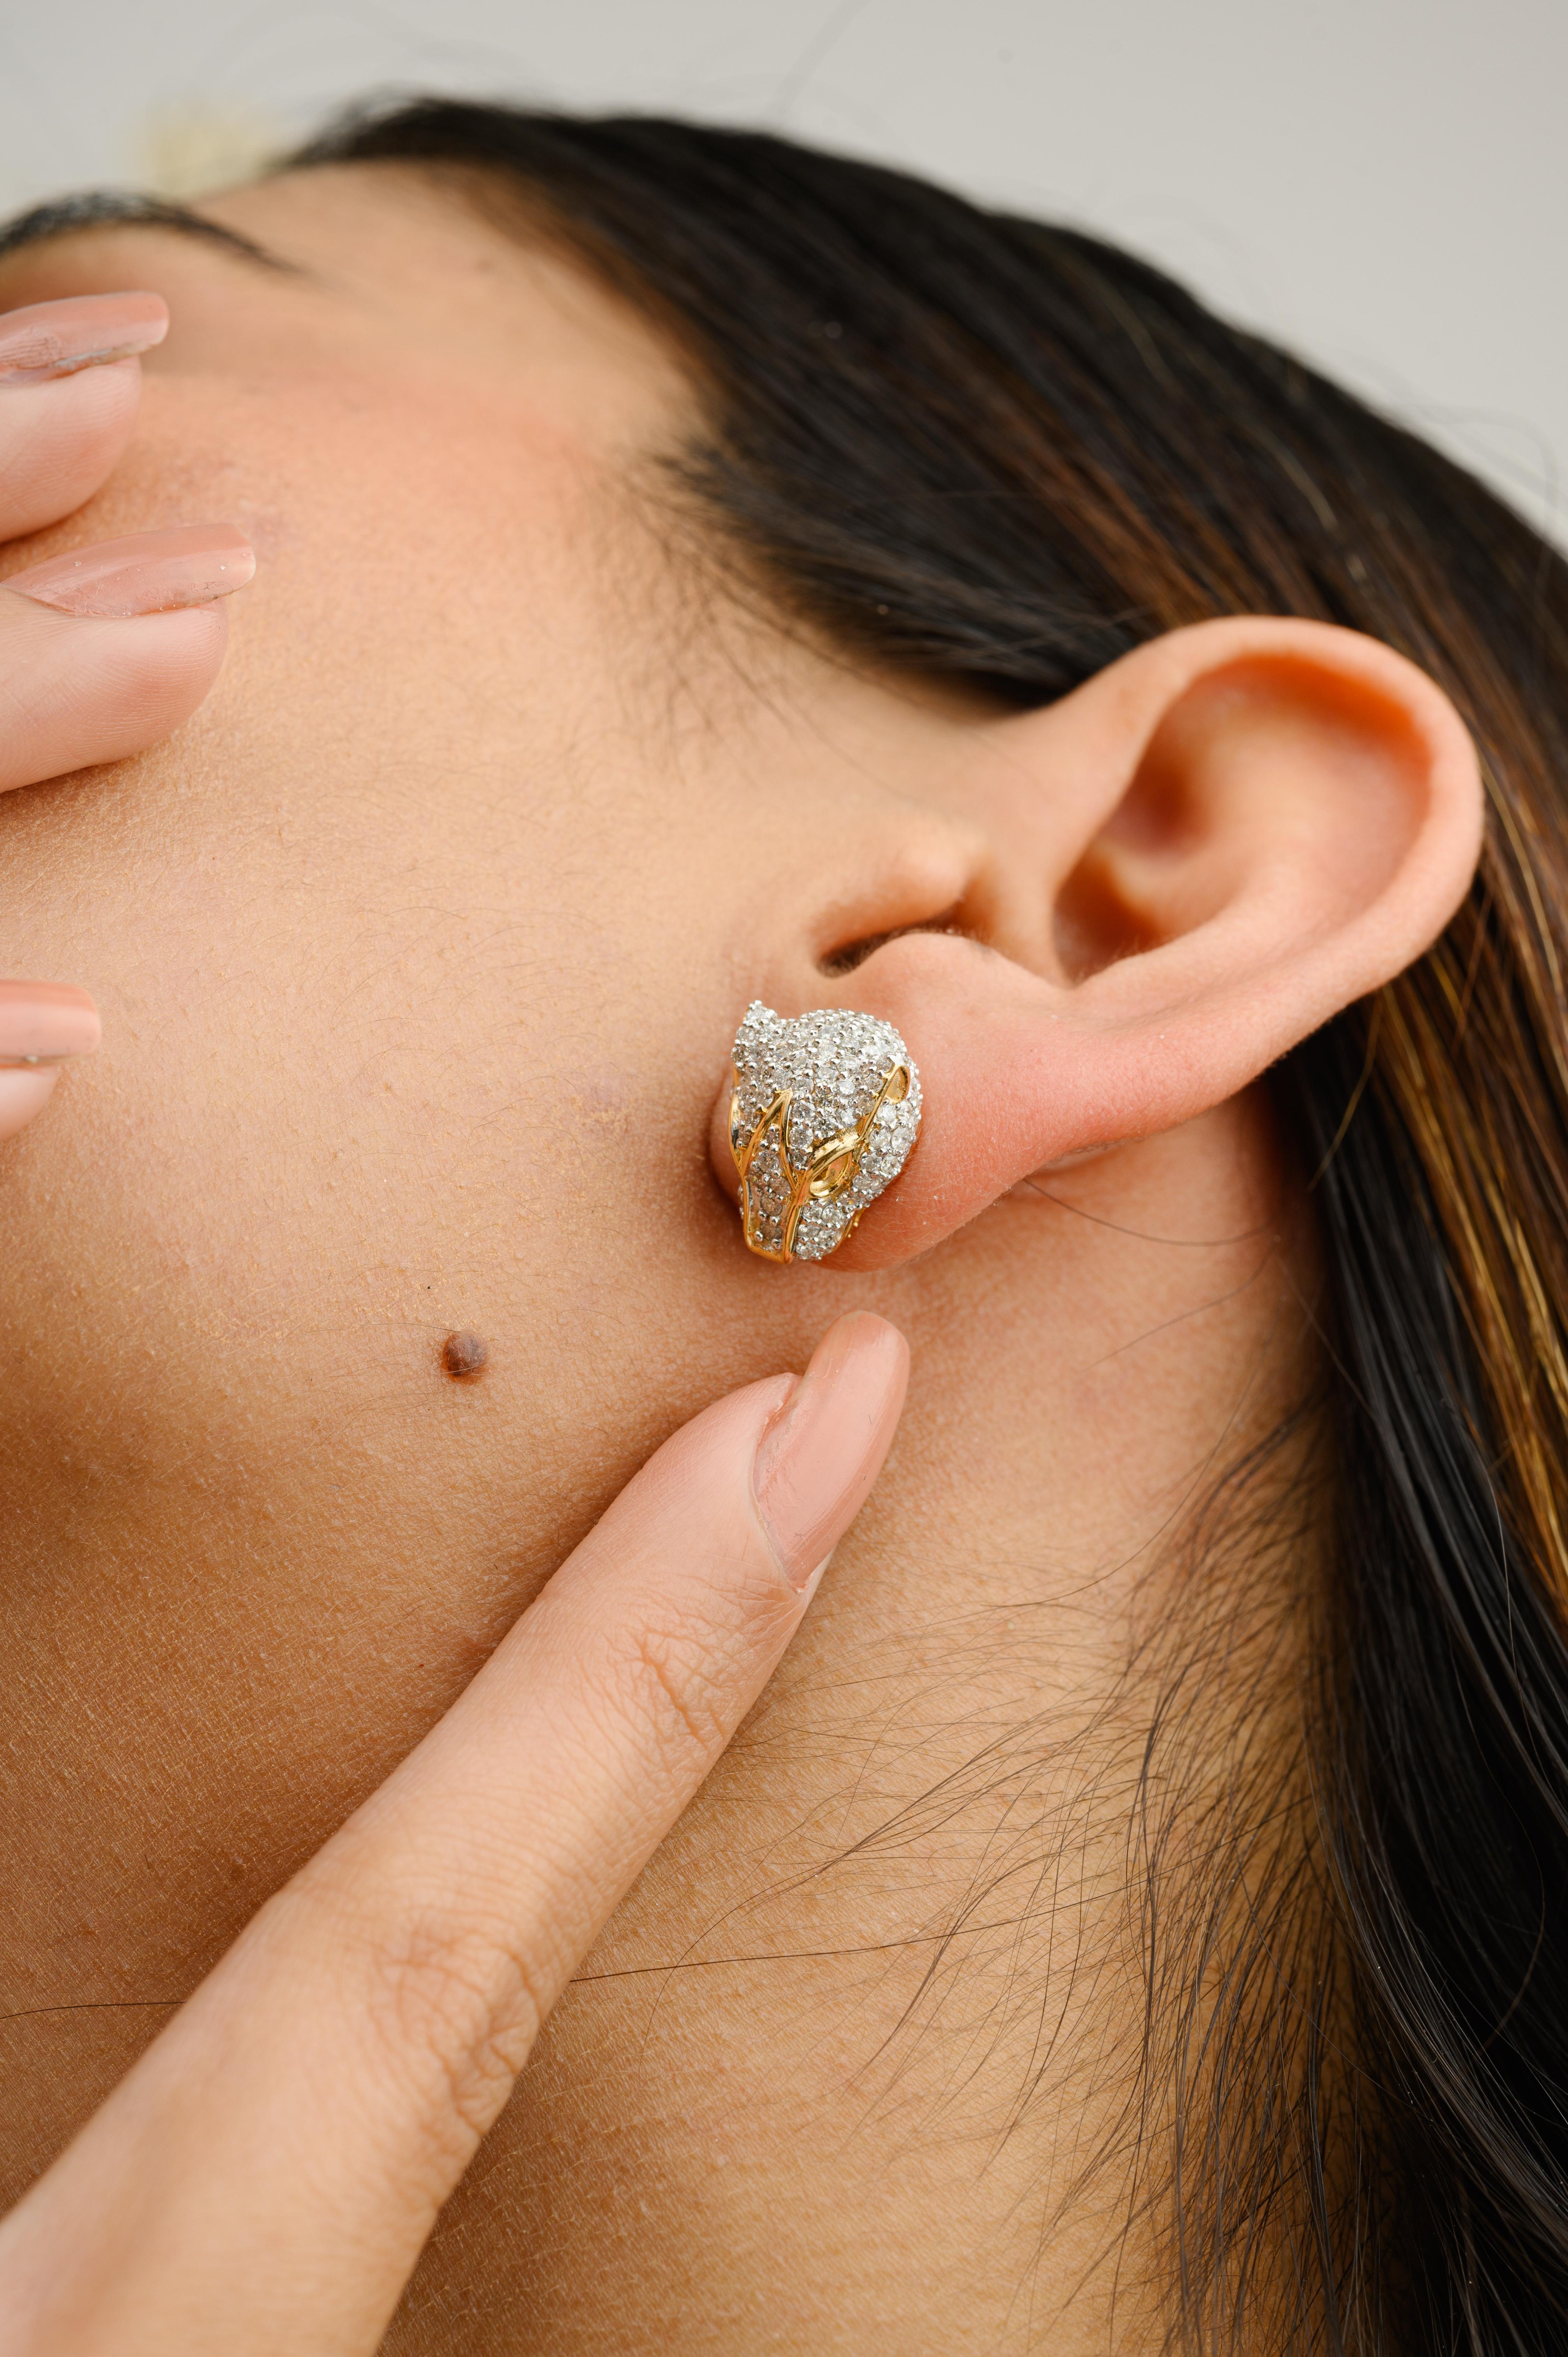 Auffällige 1,93 CTW Diamant-Panther-Ohrstecker aus 18 Karat Gold, mit denen Sie Ihren Look unterstreichen können. Sie brauchen Ohrstecker, um mit Ihrem Look ein Statement zu setzen. Diese Ohrringe sorgen für einen funkelnden, luxuriösen Look mit